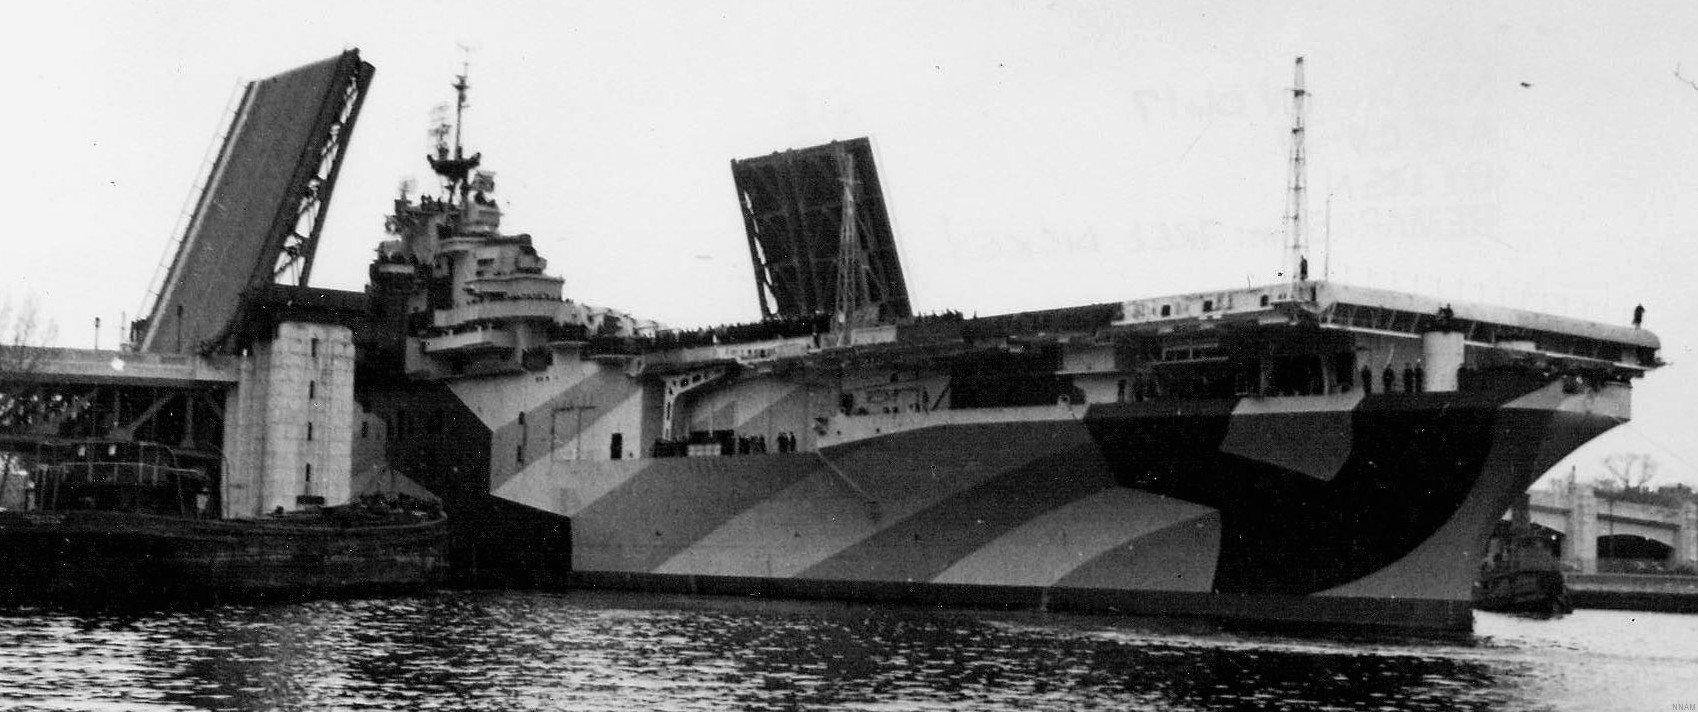 cva-19 uss hancock cv essex class aircraft carrier 53